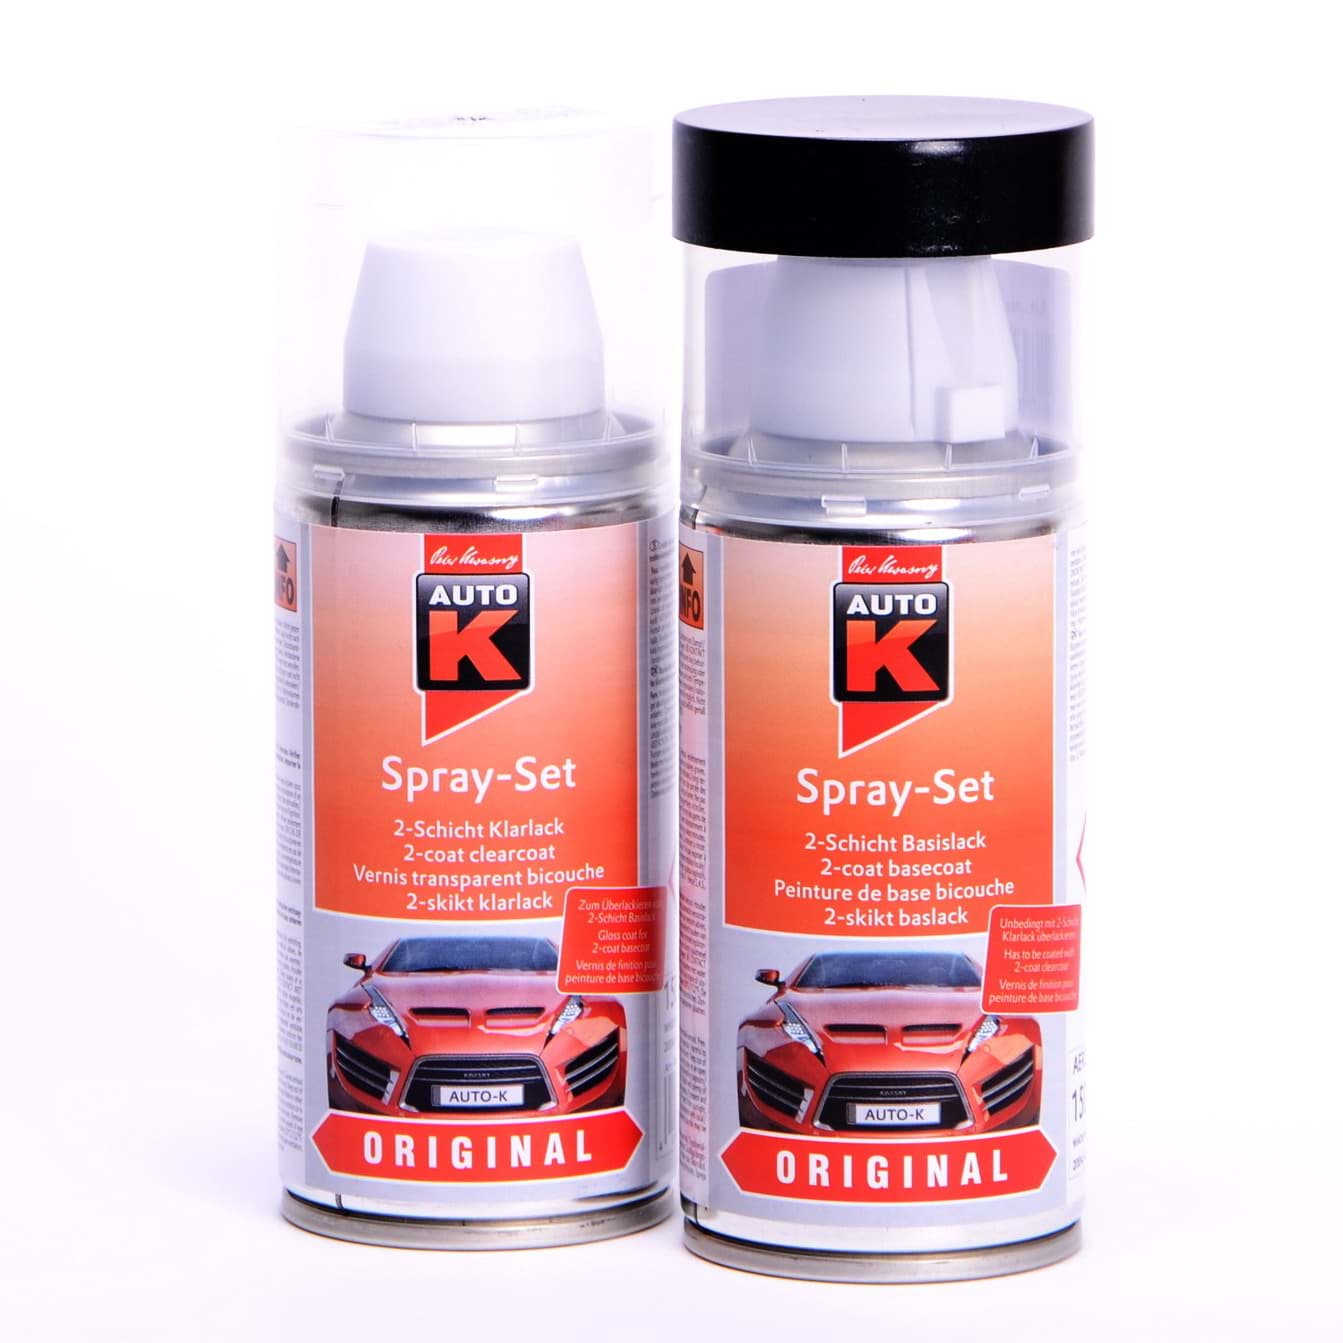 Afbeelding van Auto-K Spray-Set Autolack für Mercedes 696 Nachtschwarz 23331